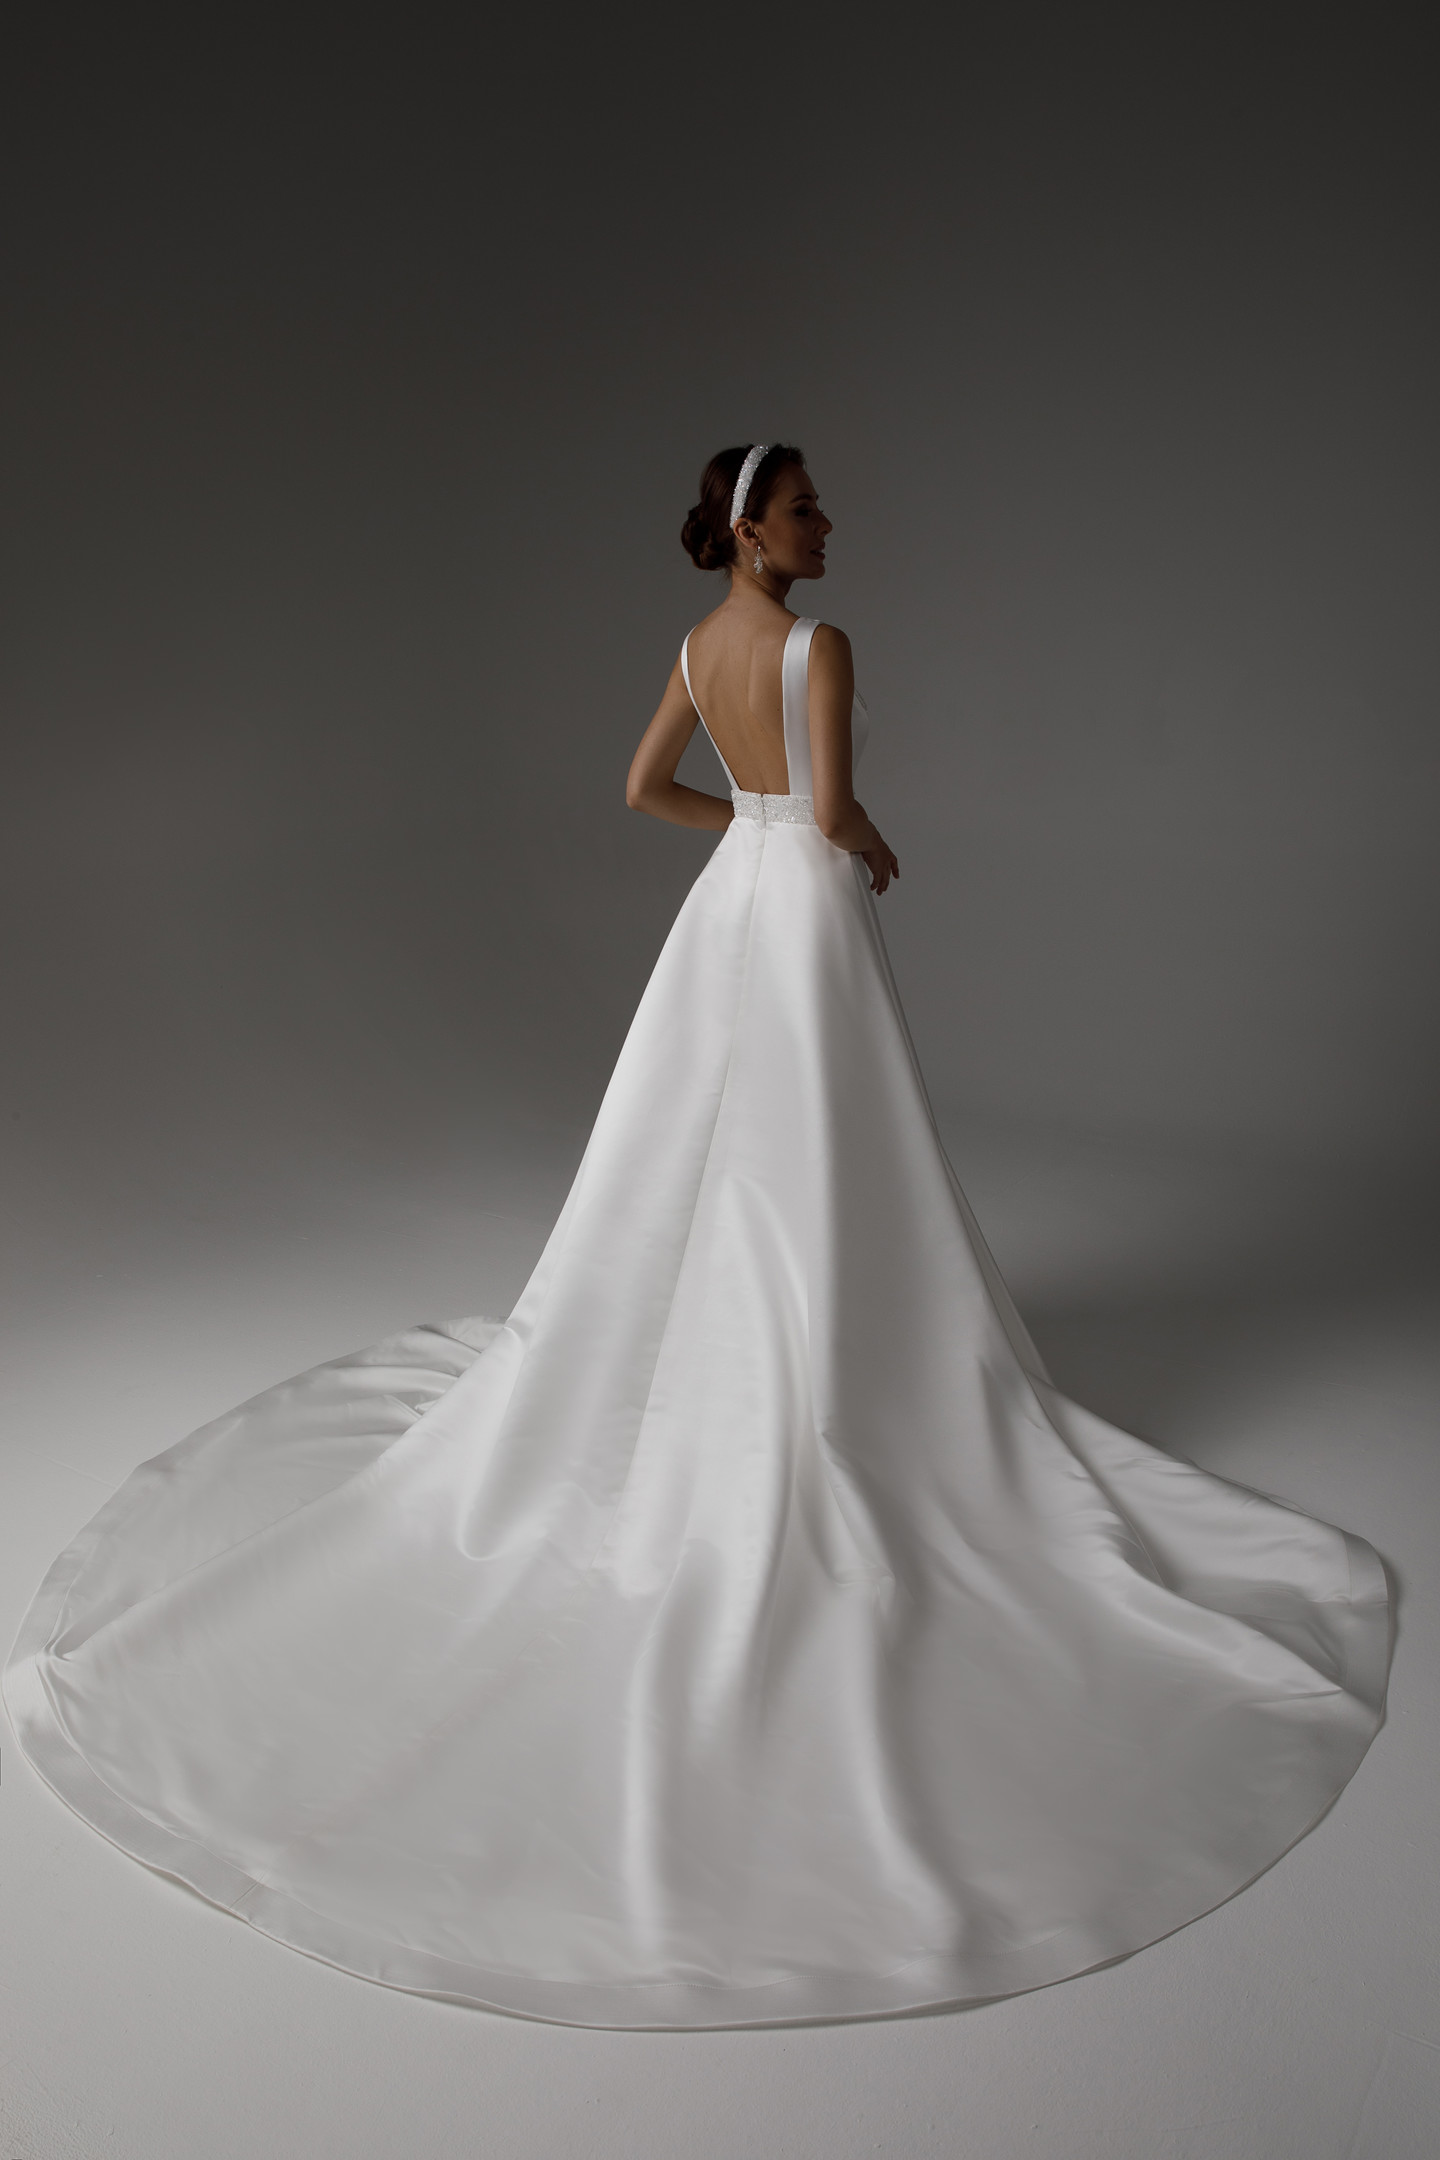 Платье Дагни, 2021, одежда, платье, свадебное, молочно-белый, атлас, Дагни, вышивка, А-силуэт, шлейф